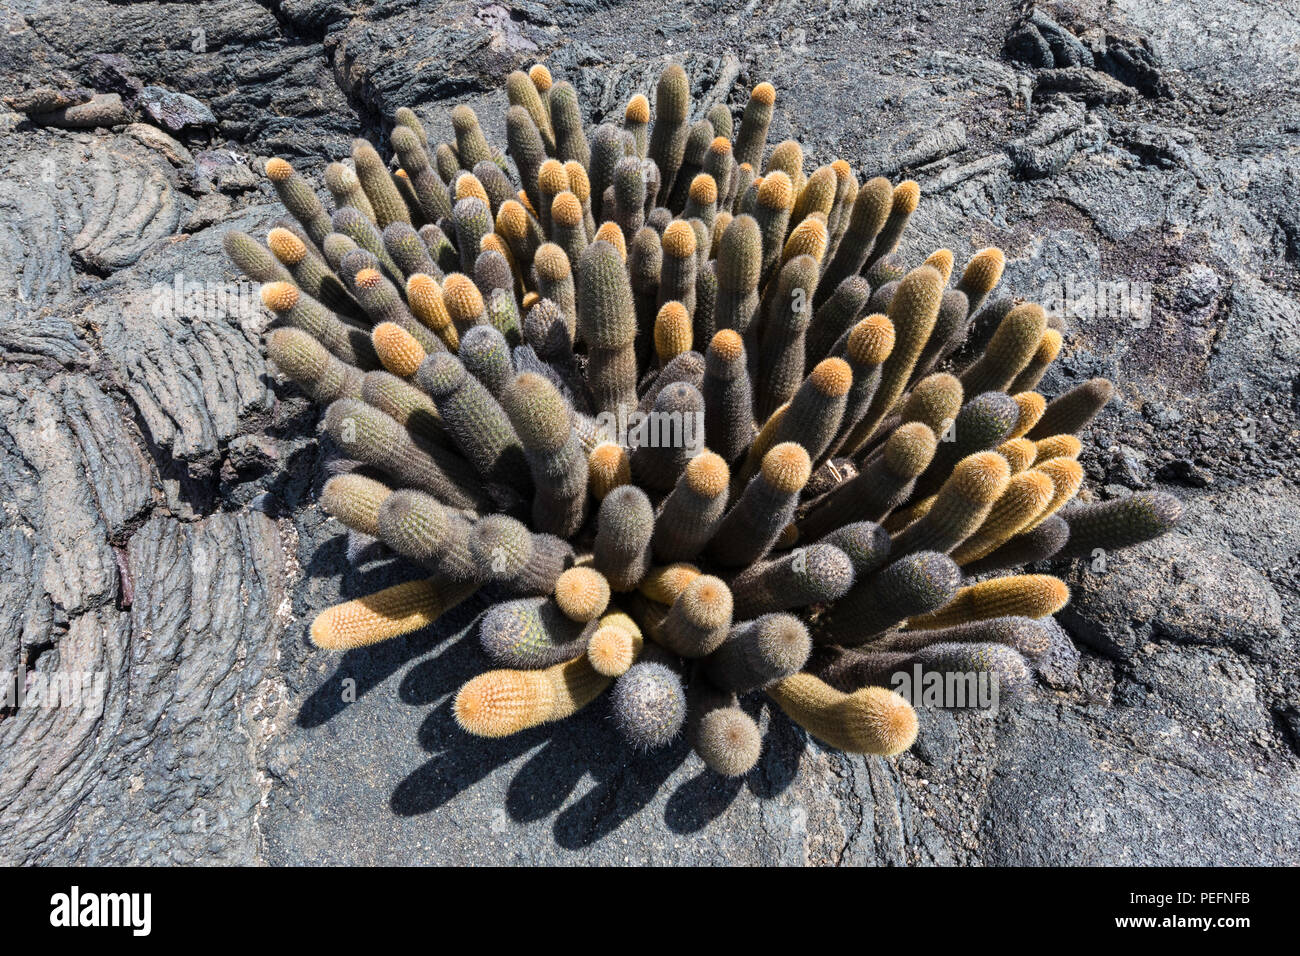 Cactus Brachycereus lave endémique, spp, l'île de Fernandina, Galapagos, Equateur. Banque D'Images